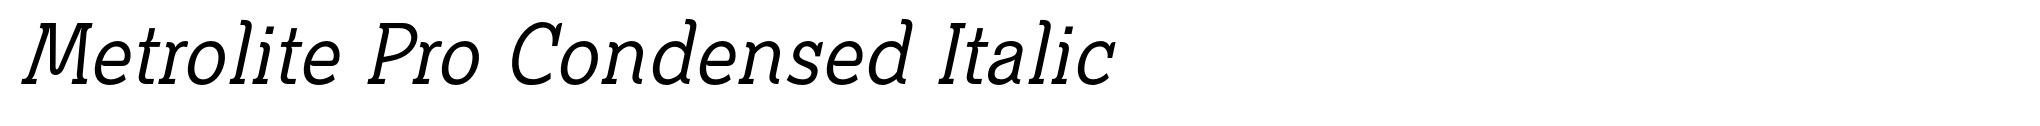 Metrolite Pro Condensed Italic image